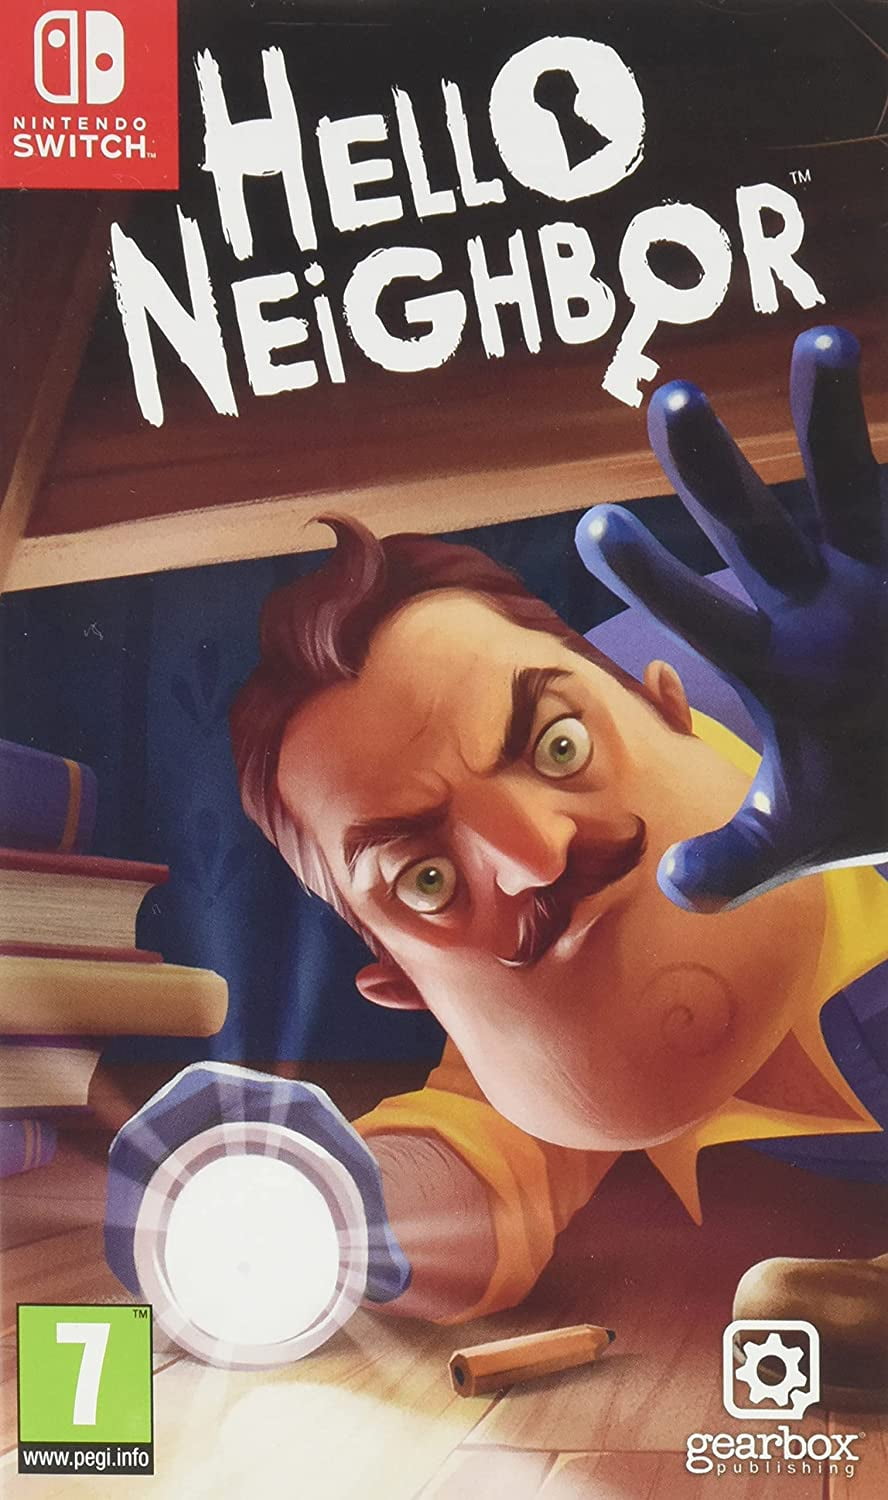 Neighbor (Nintendo Switch) - Walmart.com